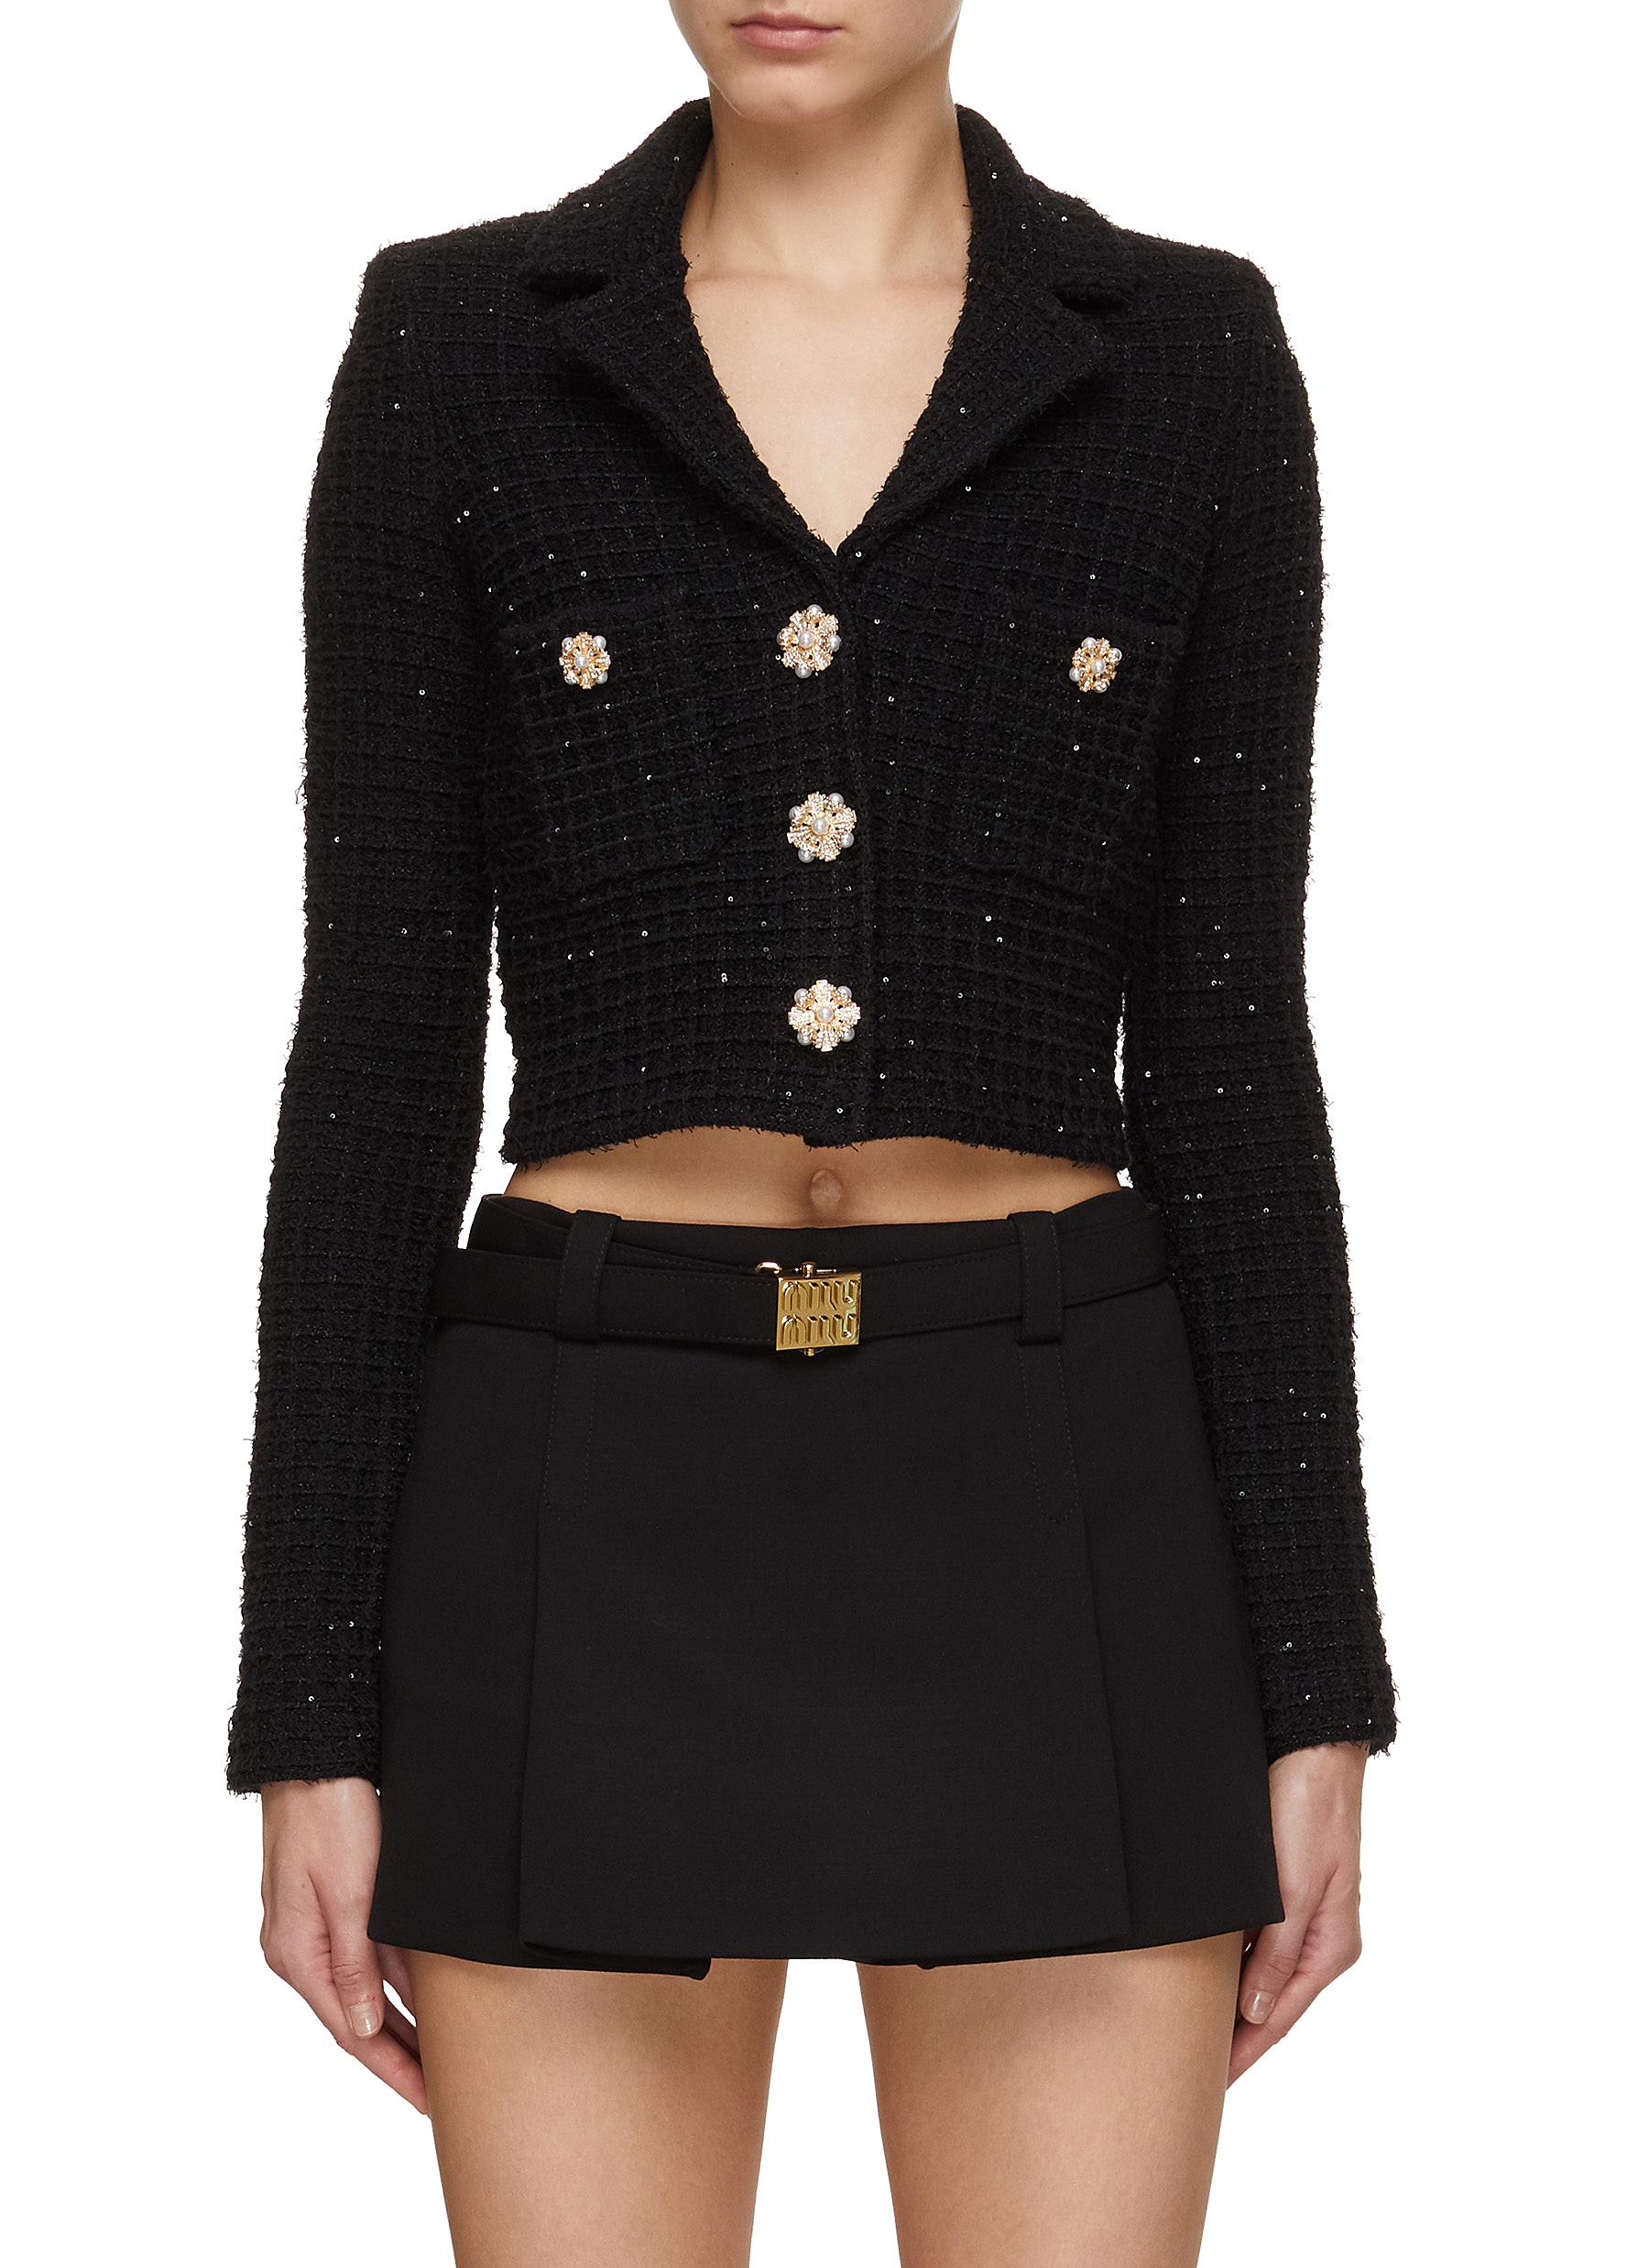 Sequin Embellished Knit Jacket